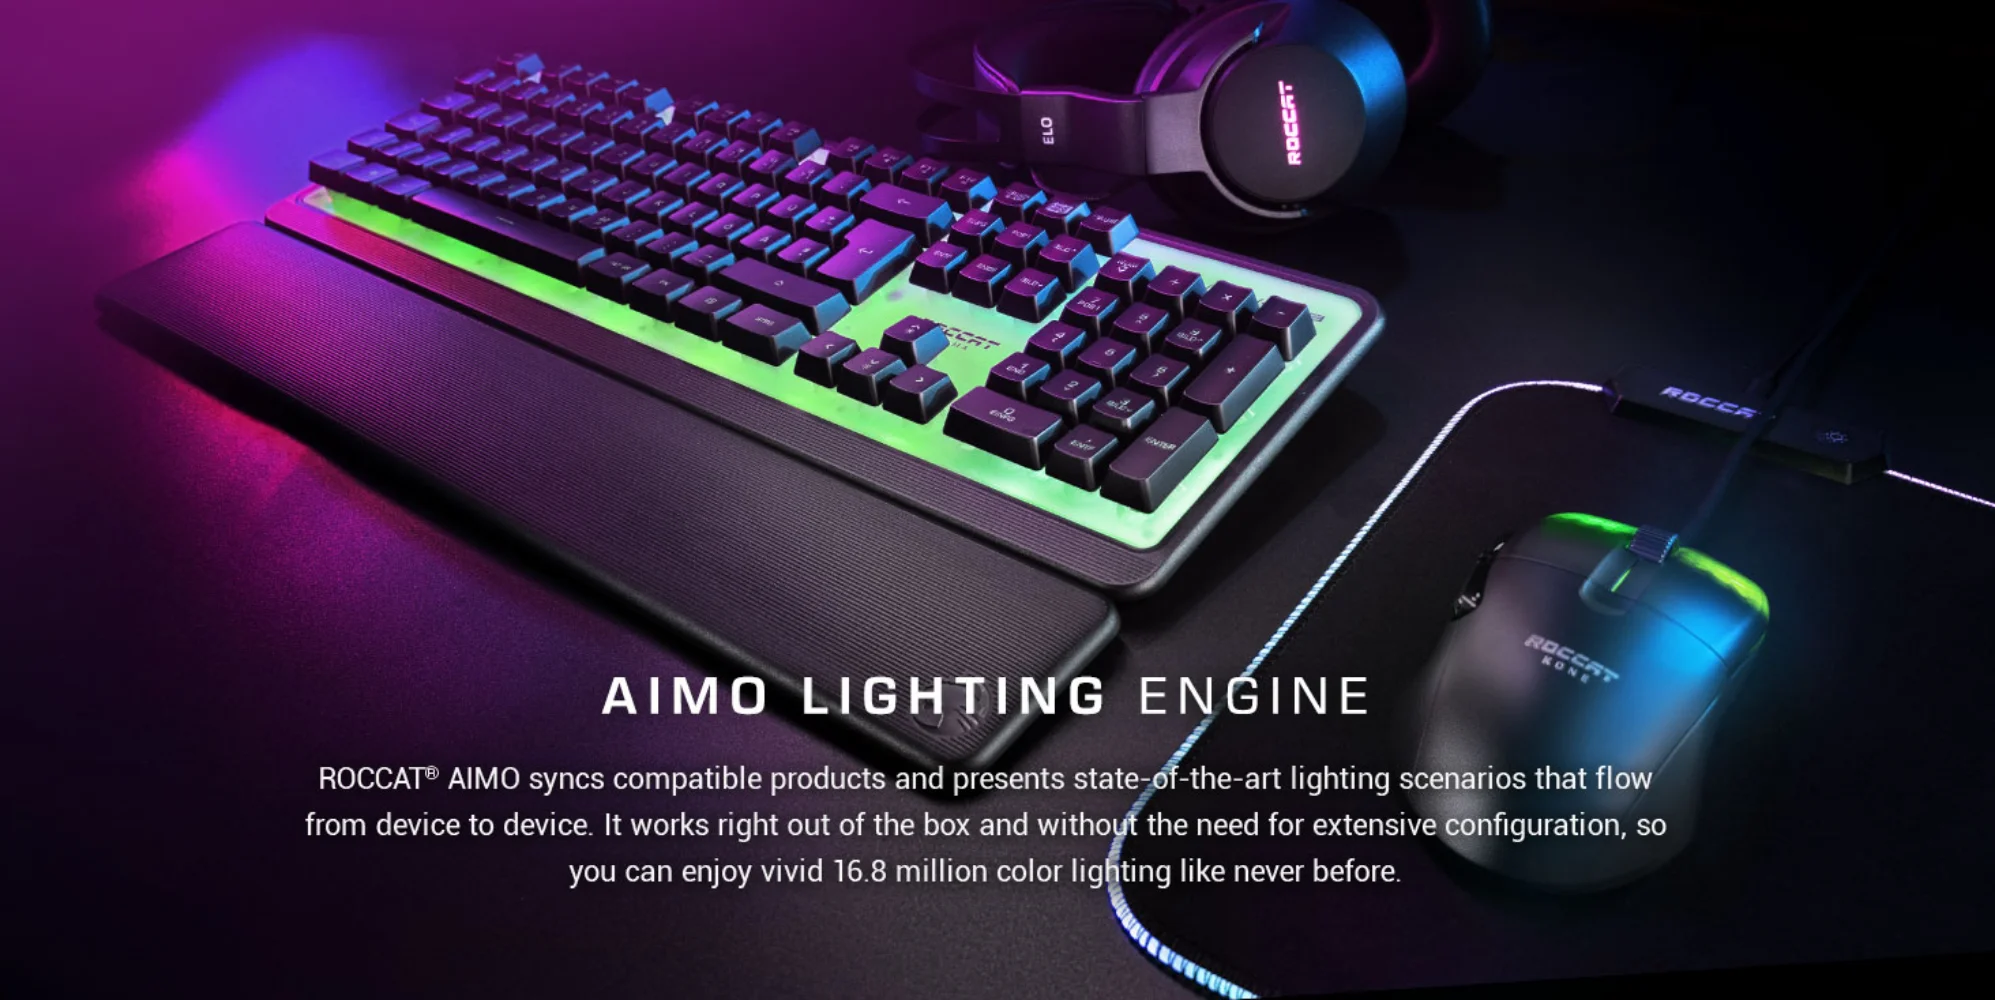 Backlit Brand Mechanical Keyboard for E-sports Game Desktop Computer  Gaming Keyboard enlarge